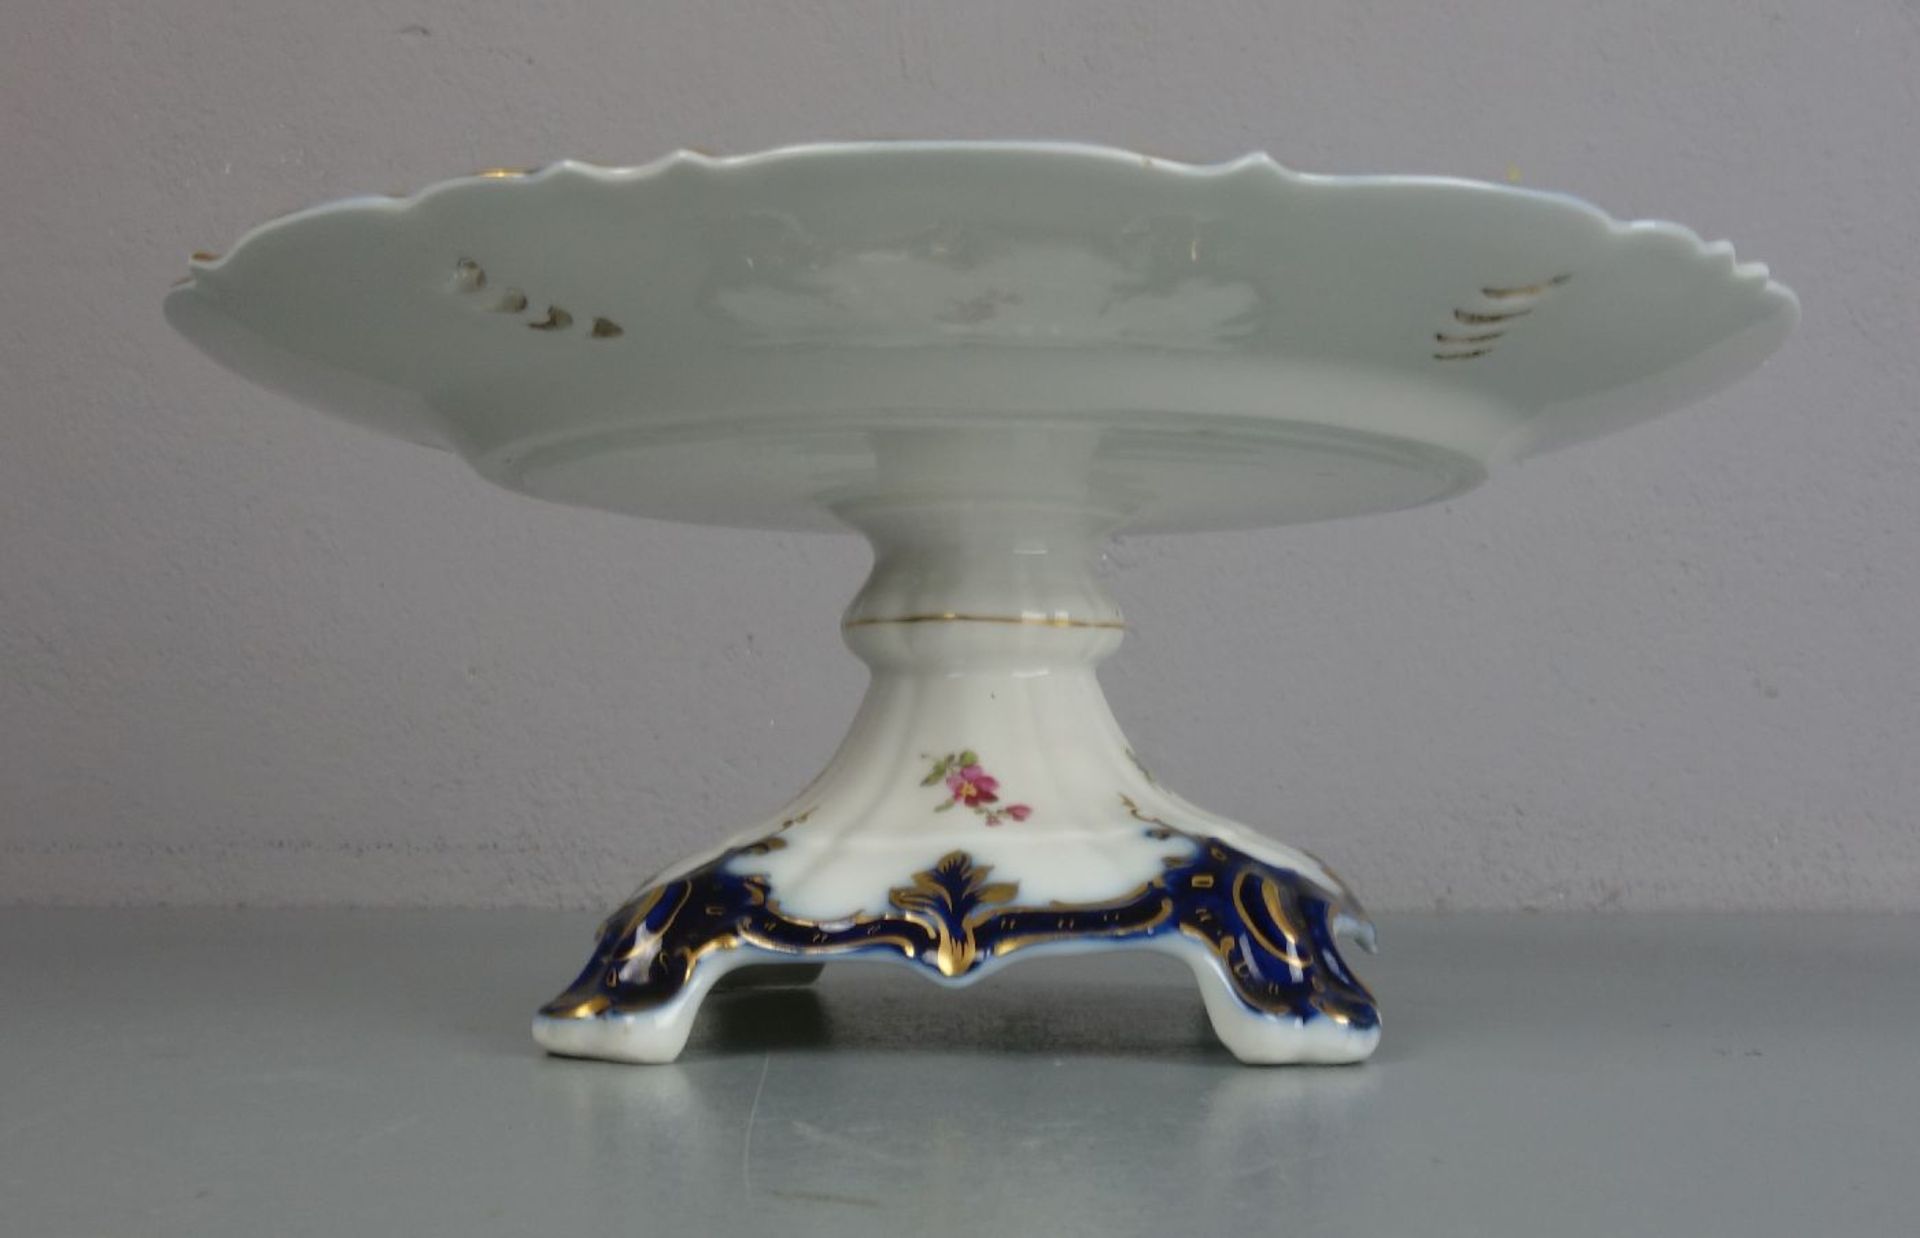 FUSSSCHALE / TAZZA / bowl on a stand, Manufaktur Nymphenburg, unter dem Stand gemarkt mit - Bild 4 aus 4